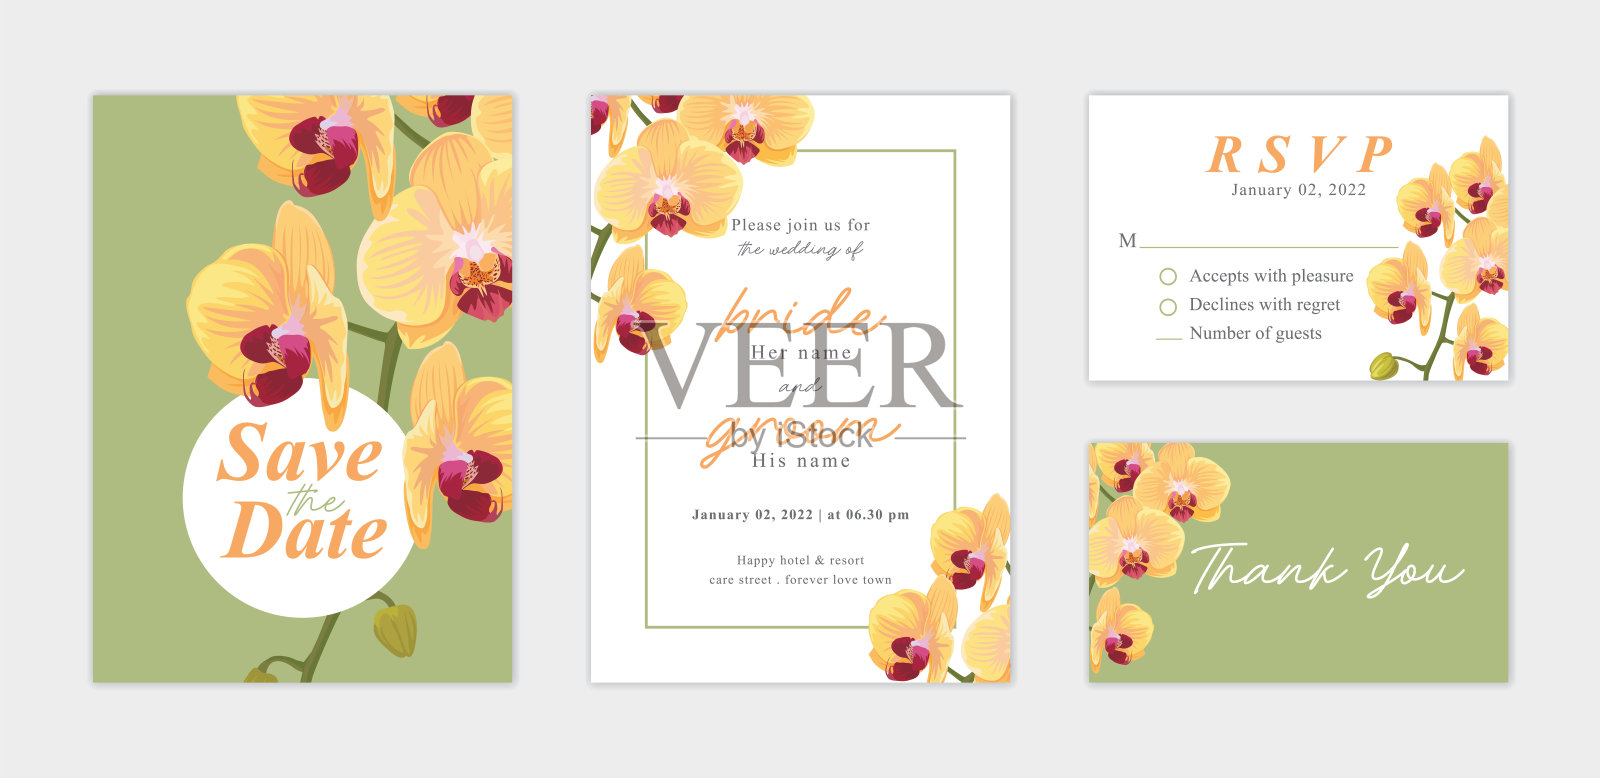 美丽的兰花花背景模板。矢量集花卉元素婚礼邀请，贺卡，信封，代金券，小册子和横幅设计。设计模板素材